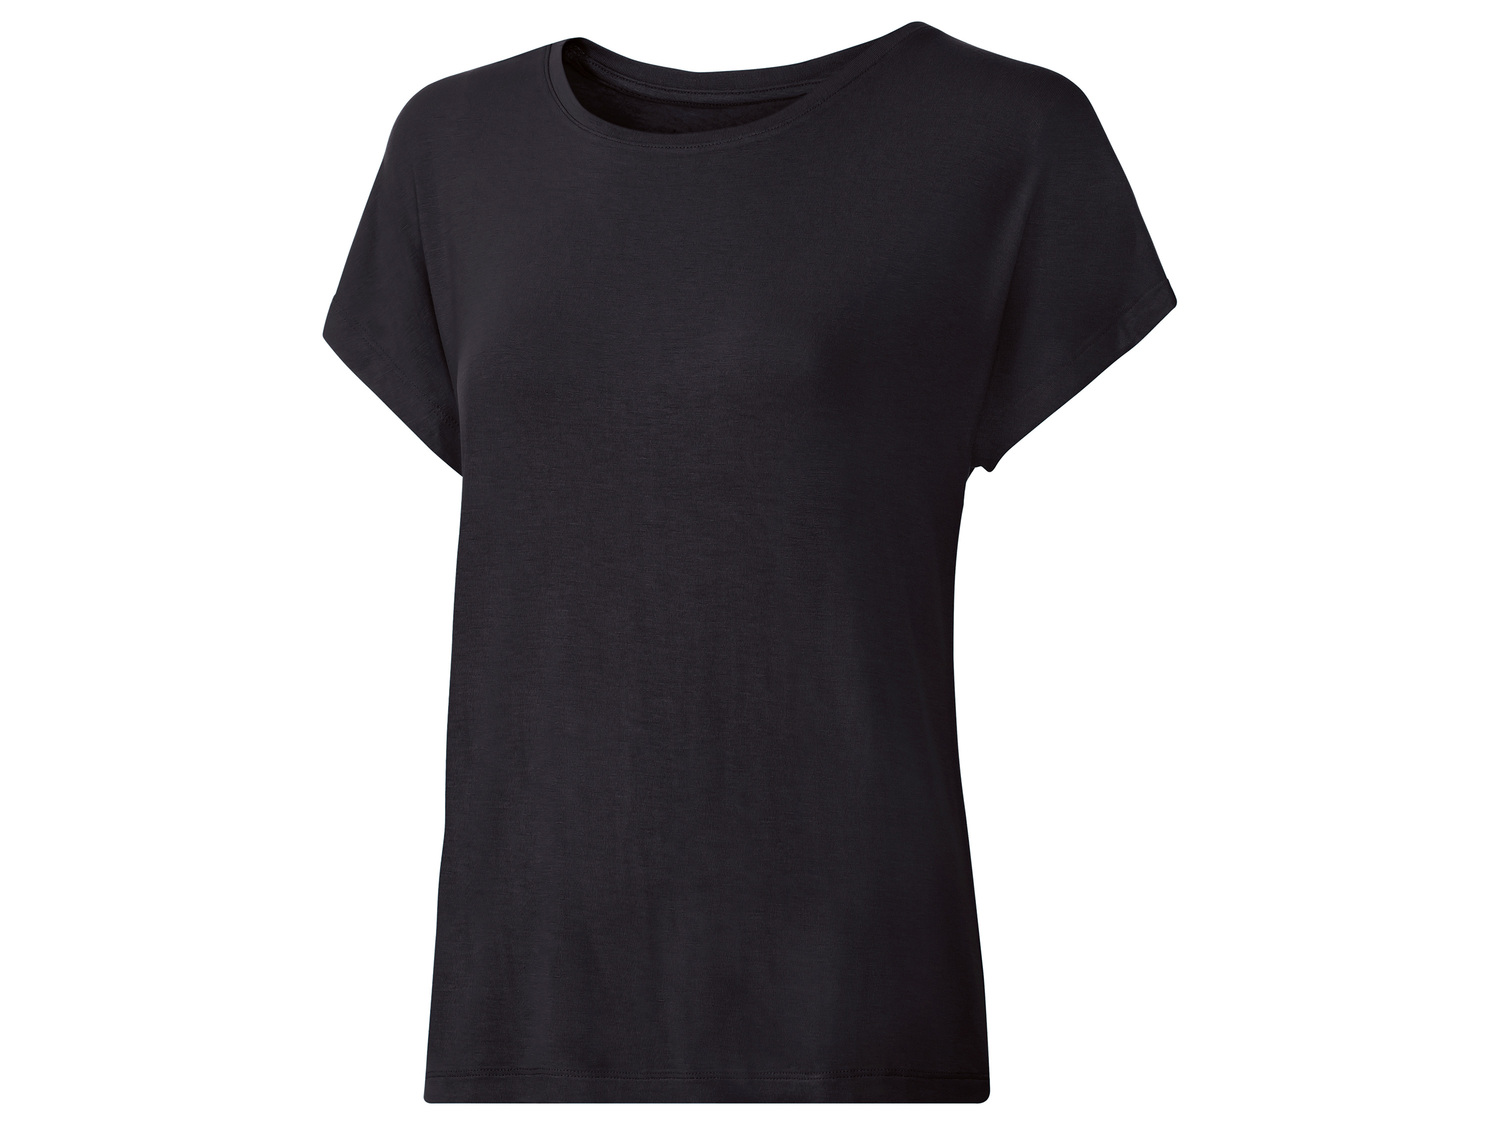 T-shirt technique , le prix 3.99 € 
- Du S au L.
- Ex. 95 % viscose (LENZING™ ...